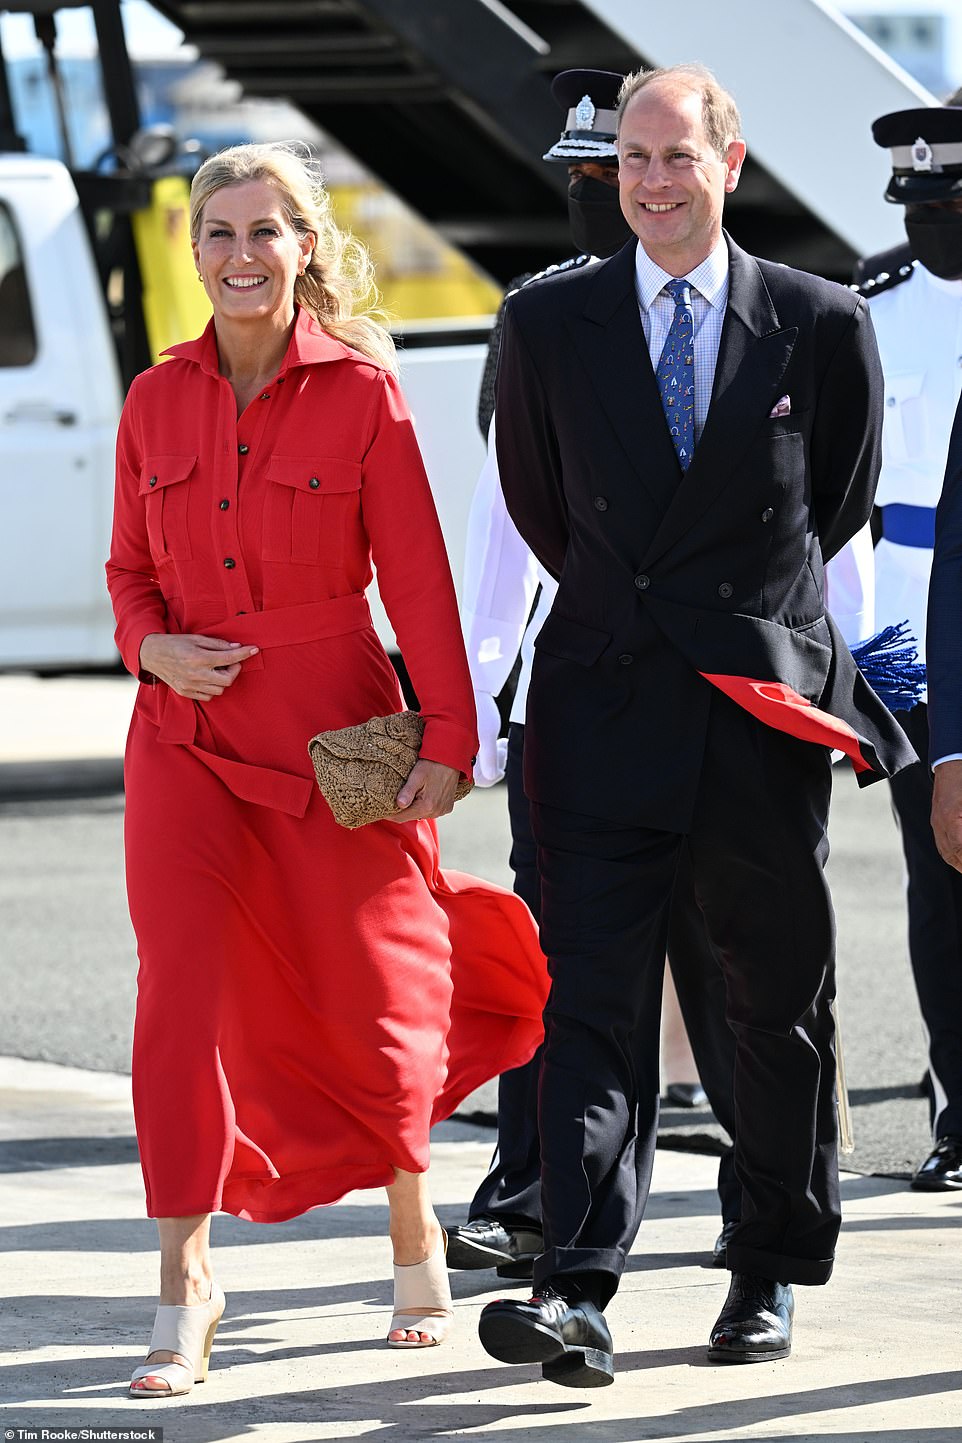 Pangeran Edward dan Sophie Wessex, berfoto di sini di Bandara Internasional Hewanorra, memulai tur selama seminggu di Karibia di St. Lucia pada hari Jumat